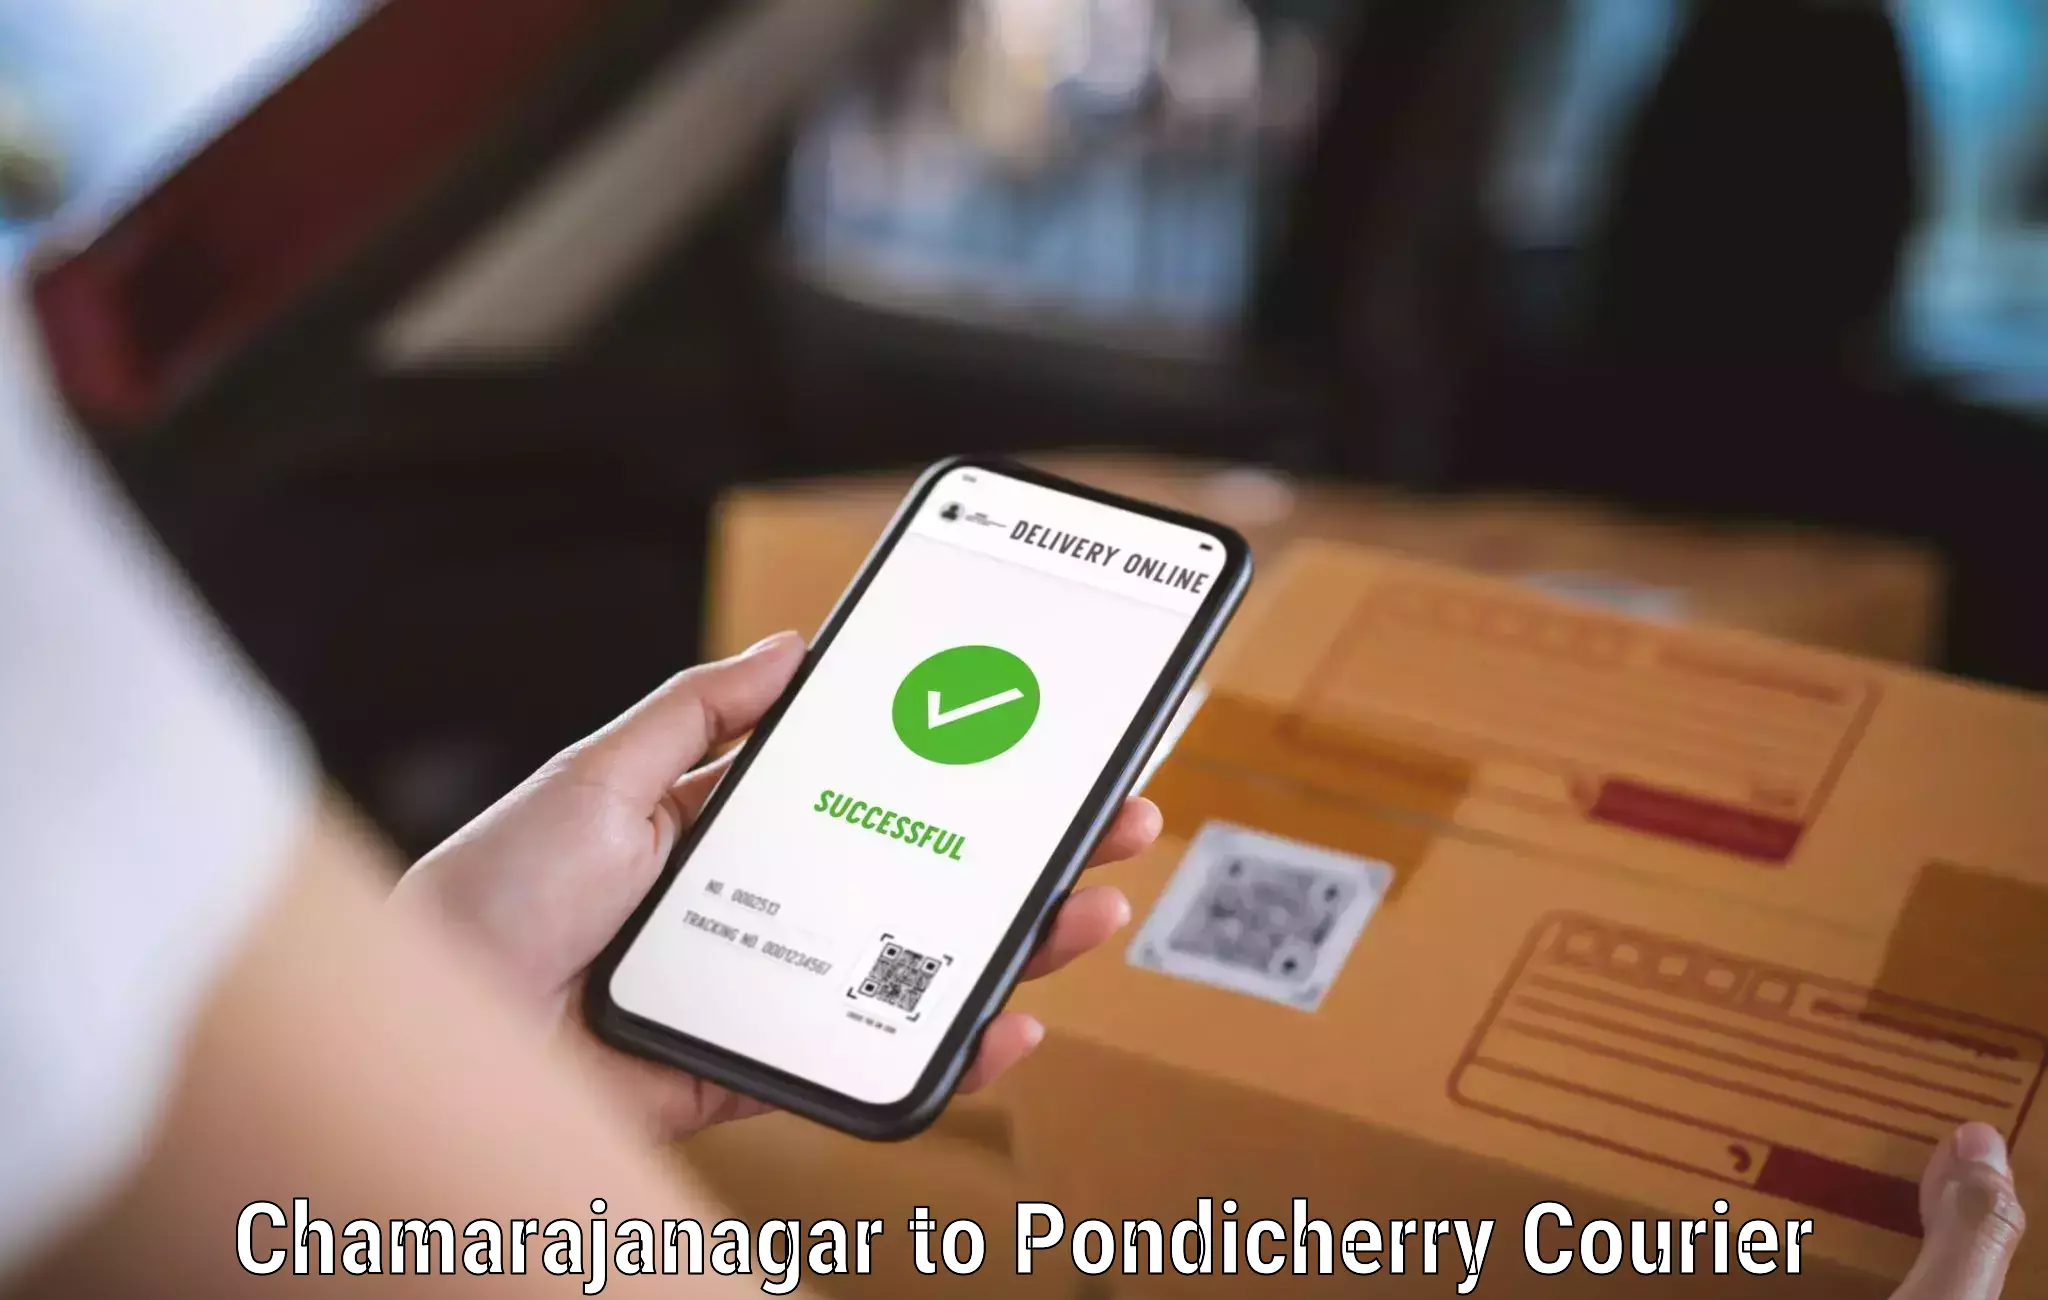 User-friendly courier app Chamarajanagar to Pondicherry